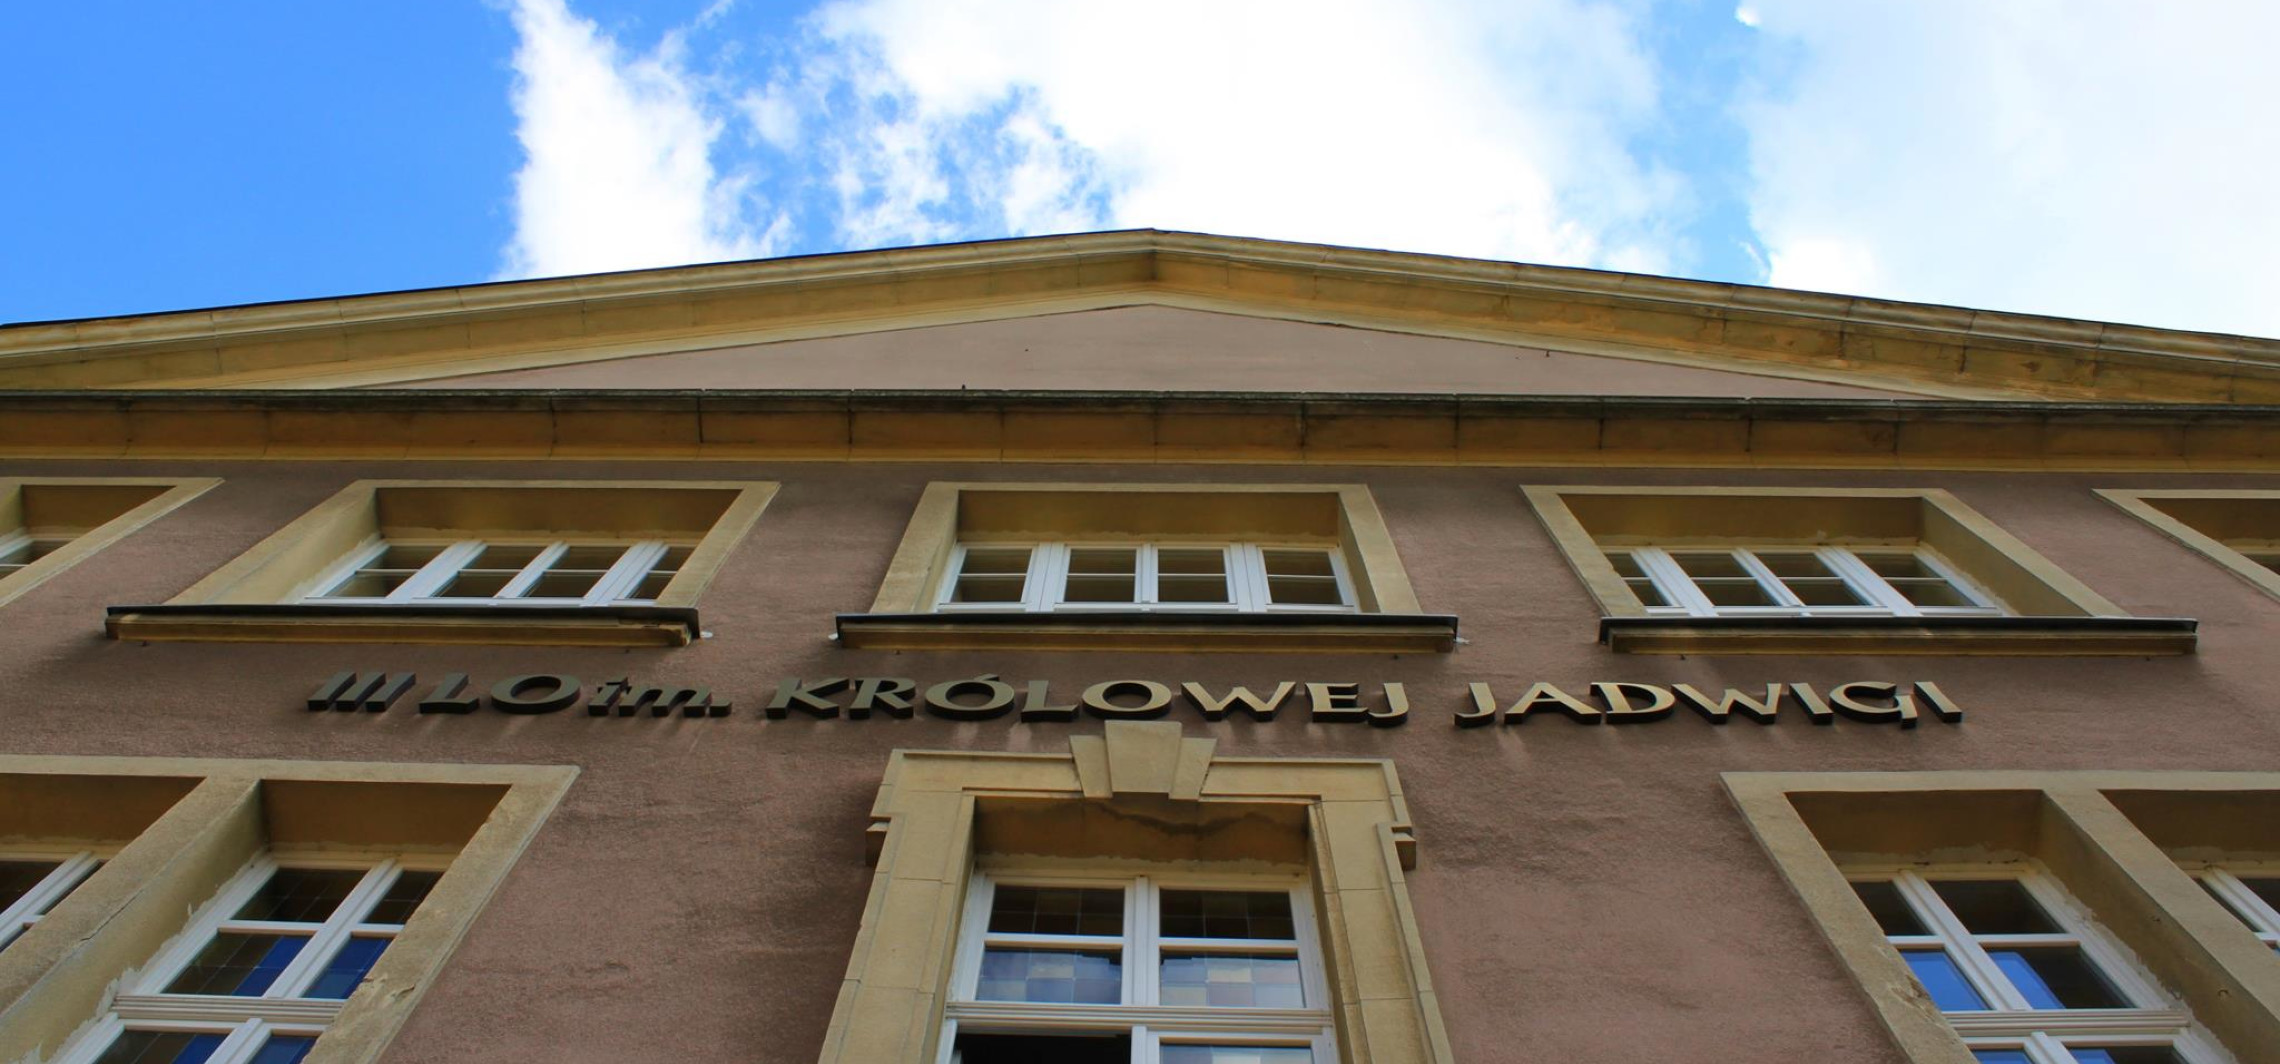 Inowrocław - "Królówka” nawiązała obiecującą współpracę z uczelnią